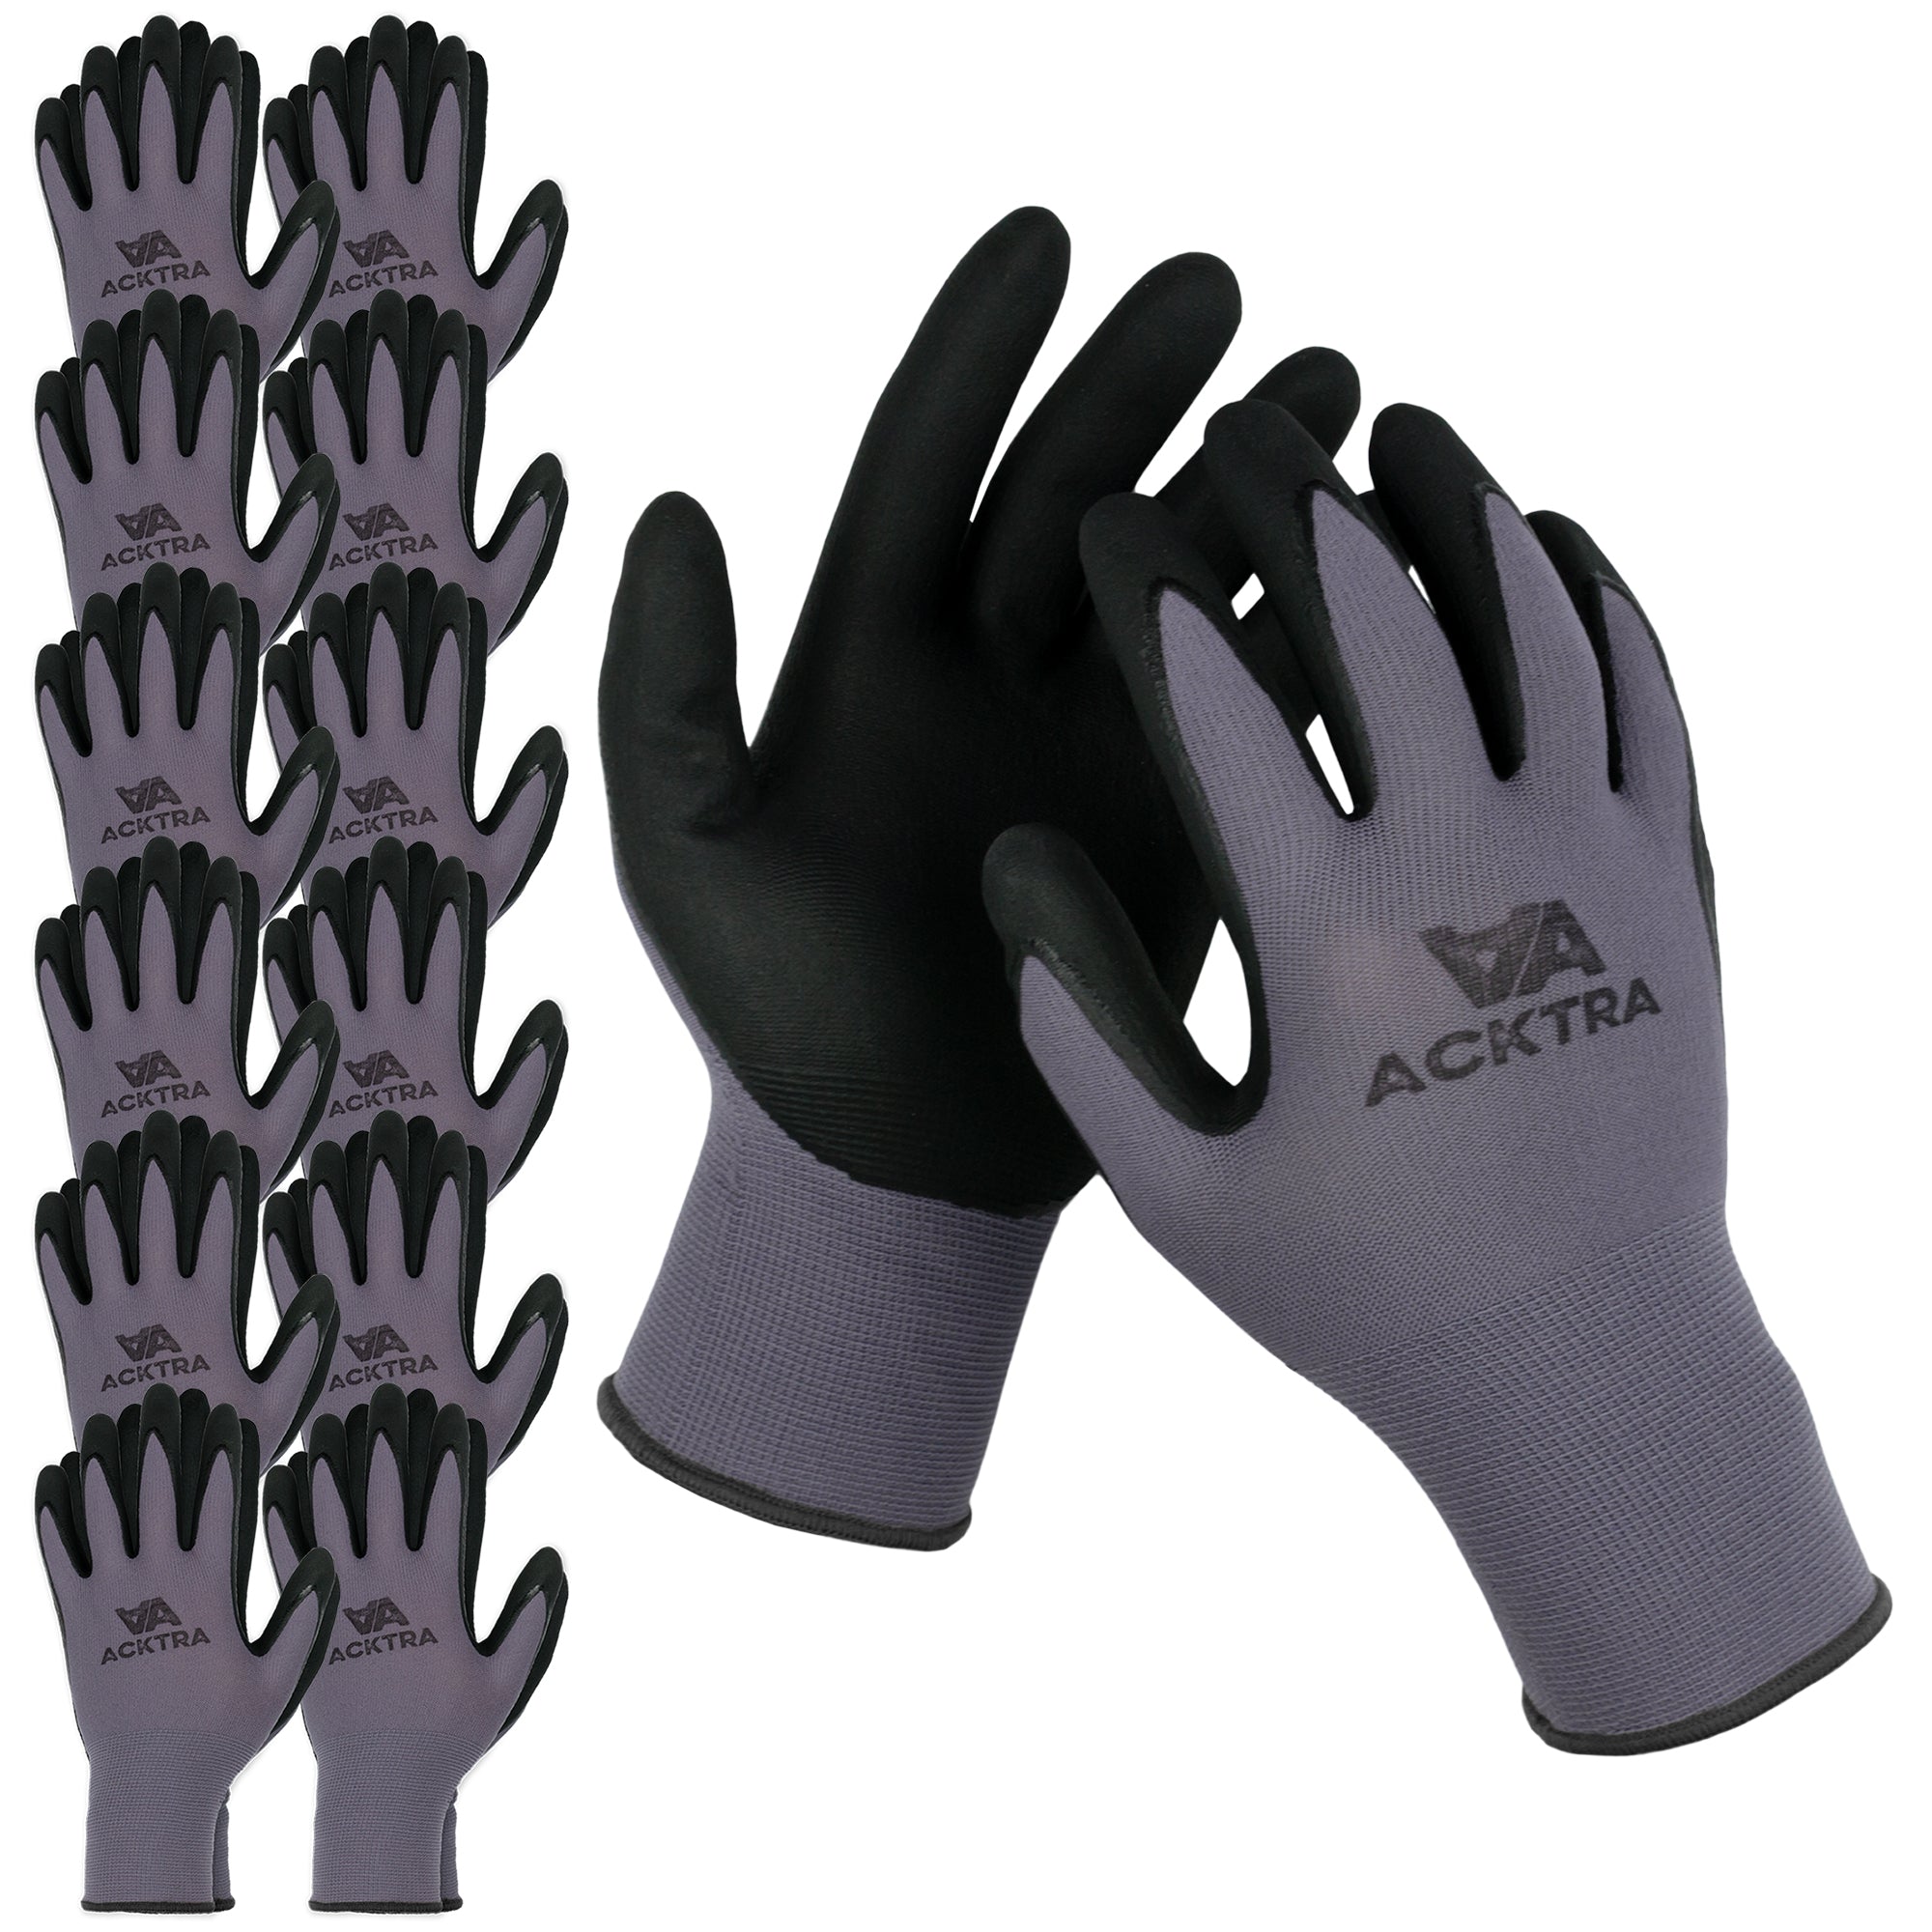 Master Mechanic Work Gloves, Nitrile-Coated , Polyester Shell, Black/Gray,  Men's XL